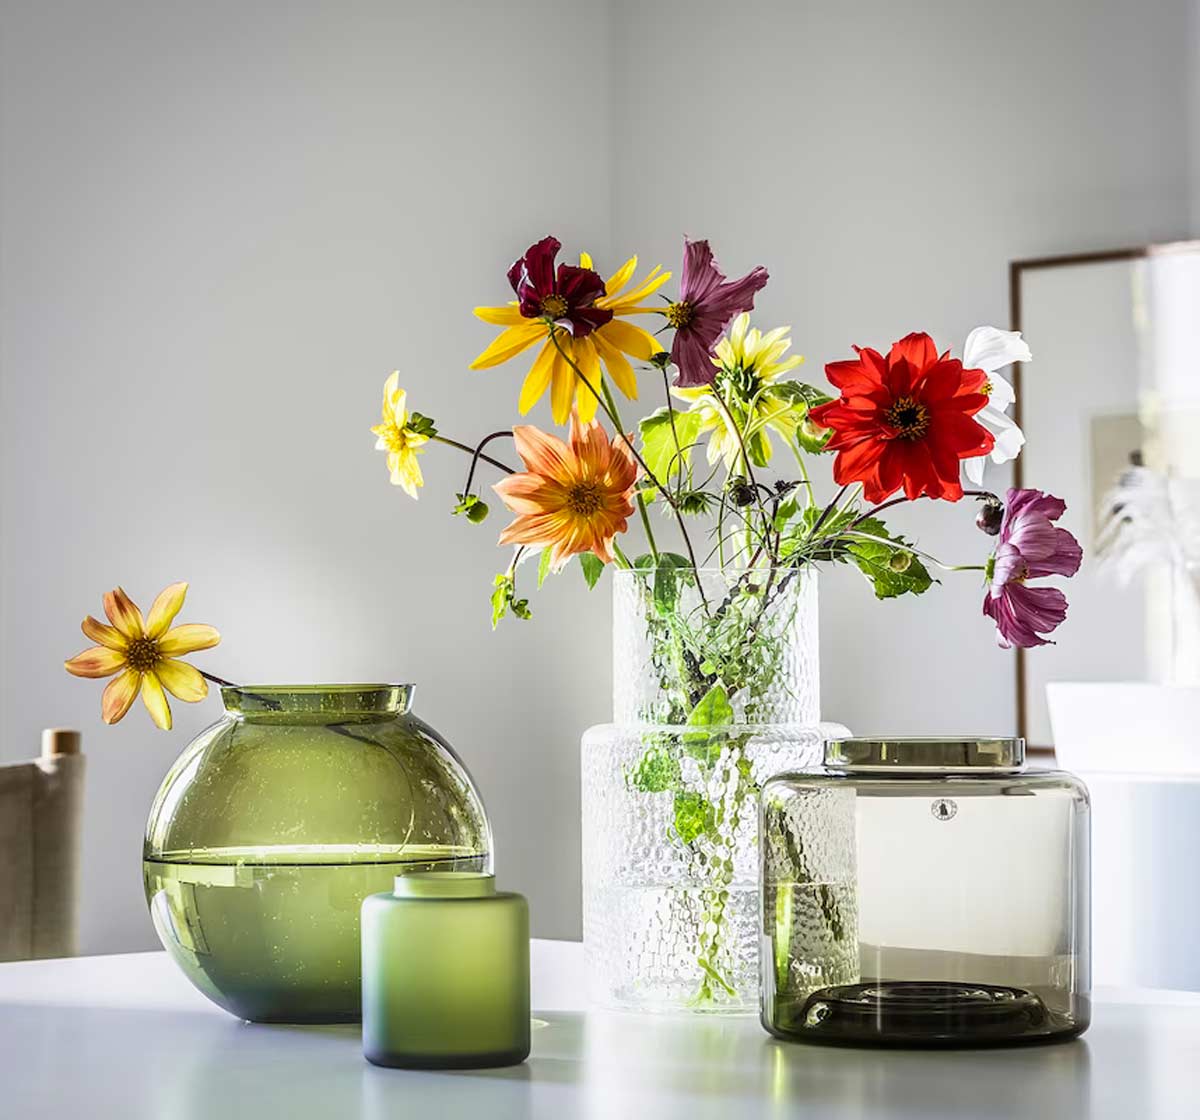 Inspirations de vases Ikea pour une touche de design dans la maison.